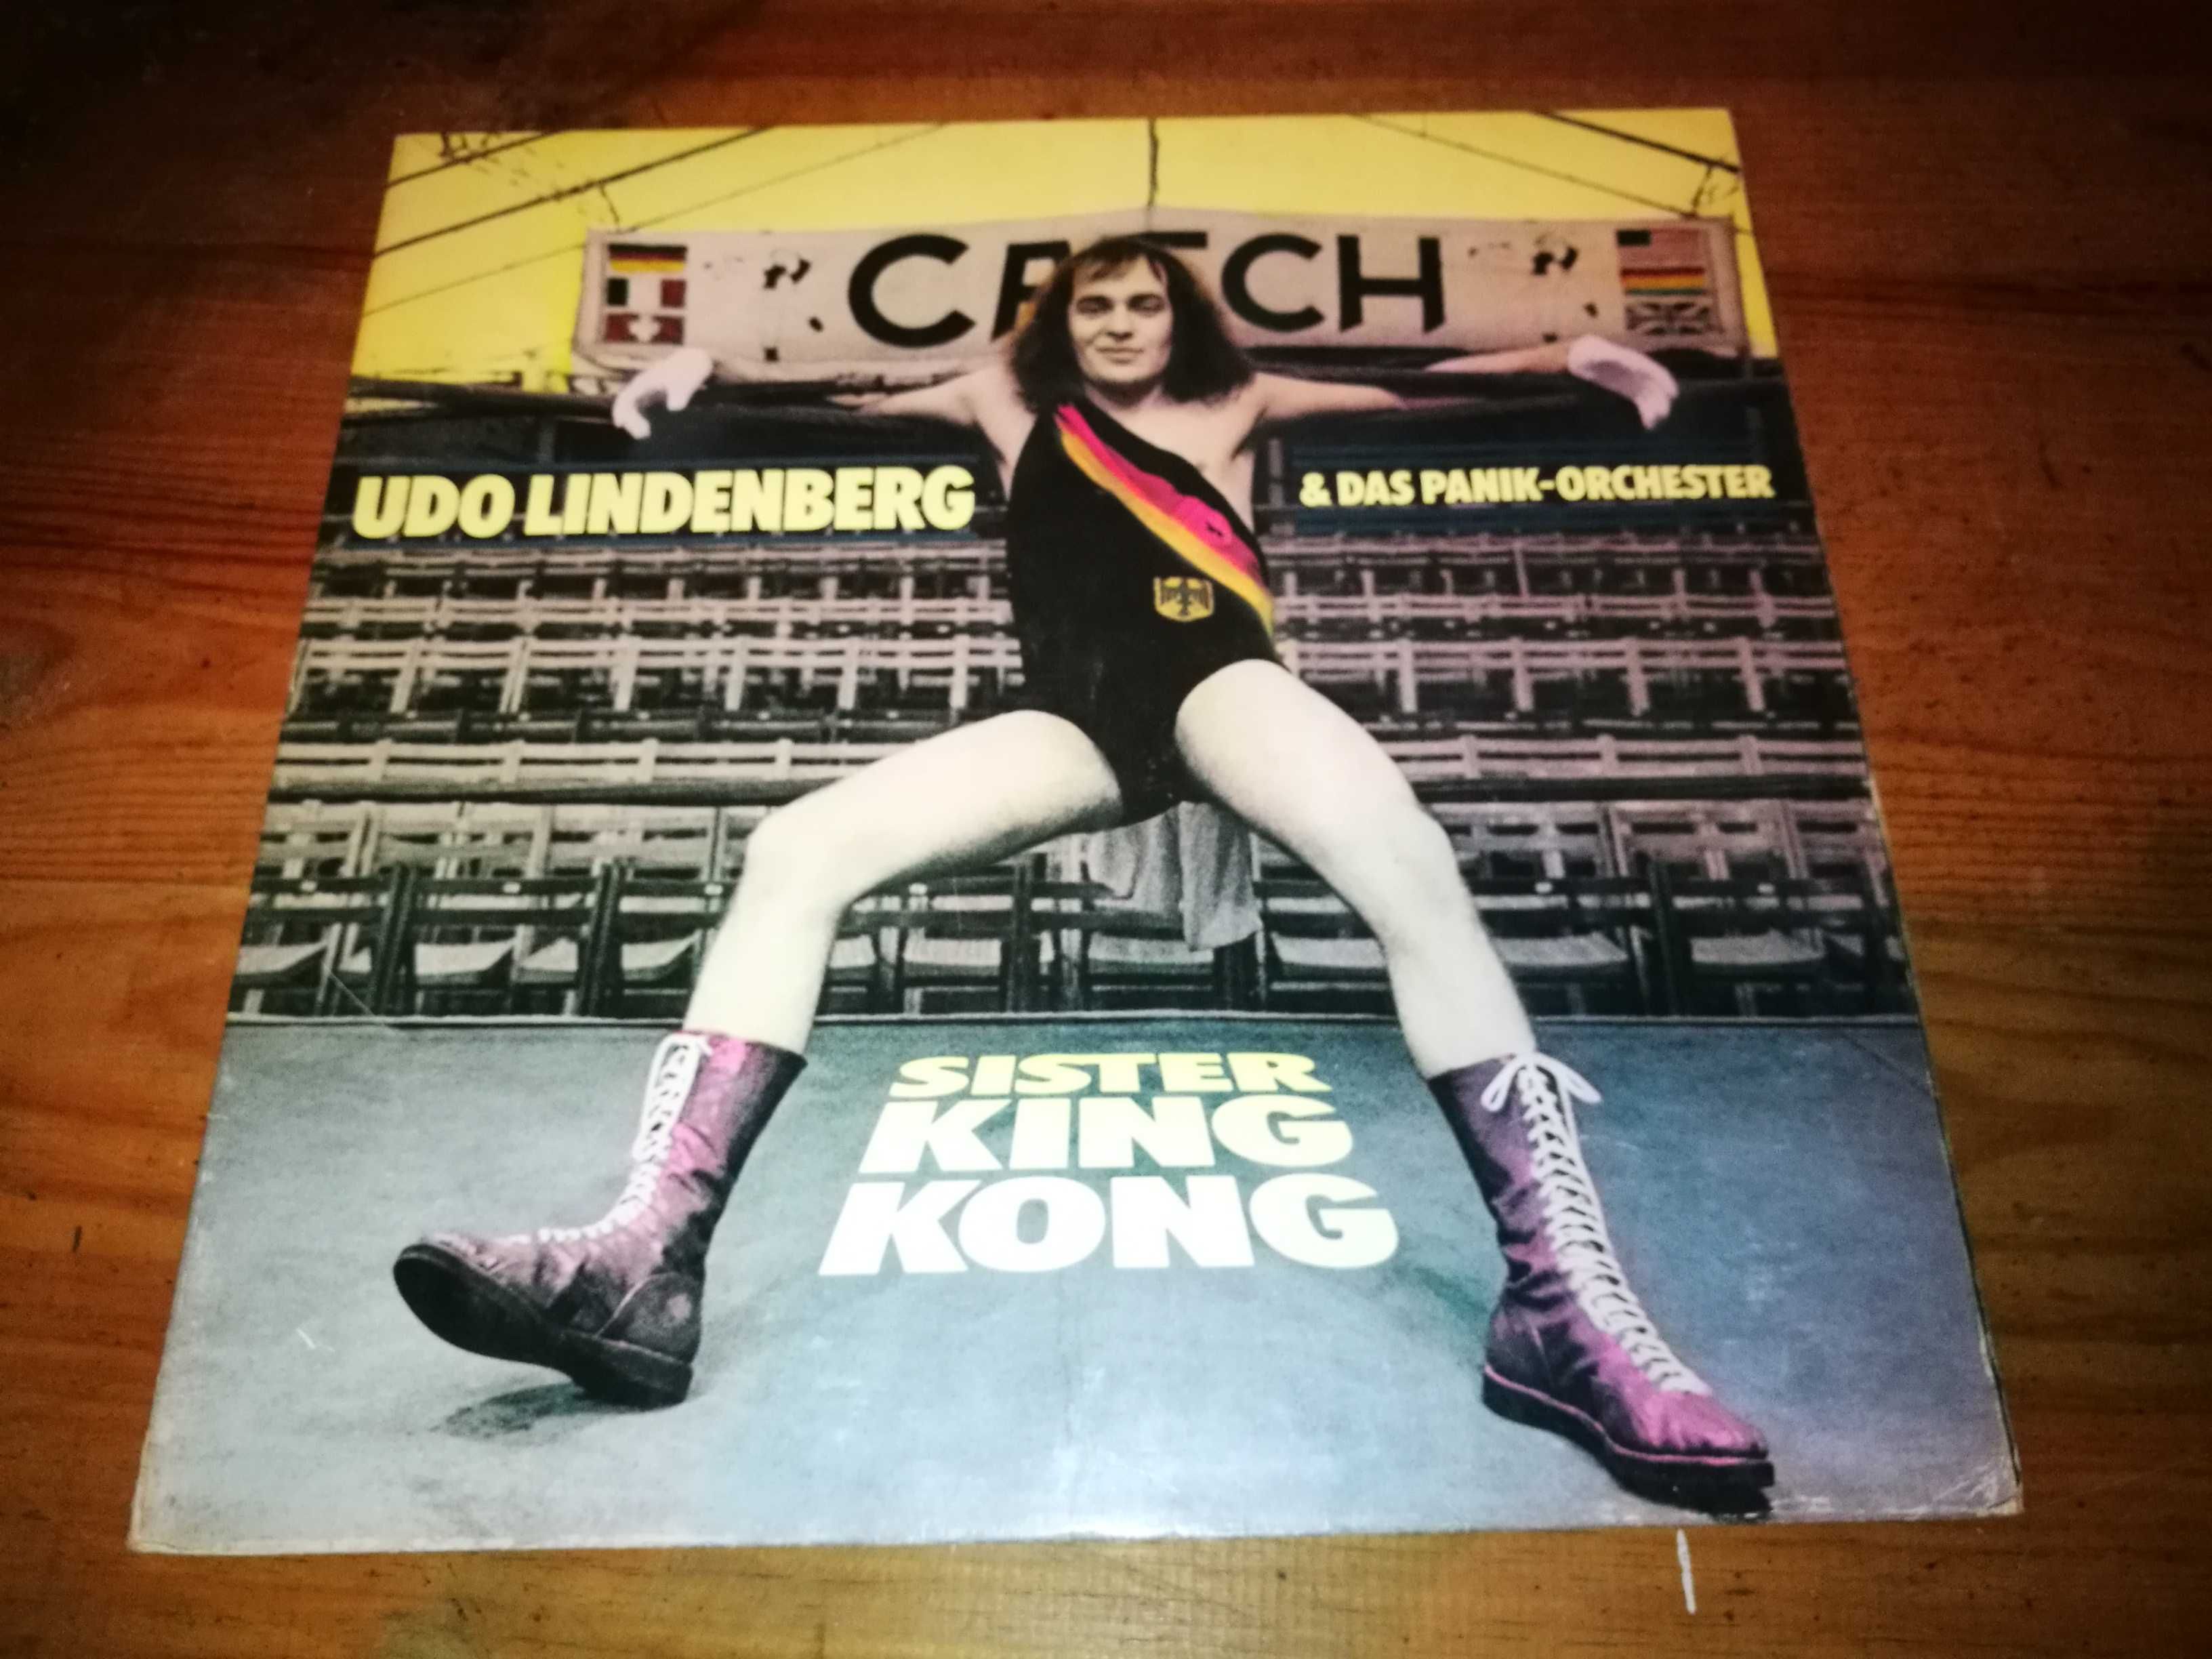 Udo  Lindernberg & Das Panik-Orchester - Sister King Kong LP